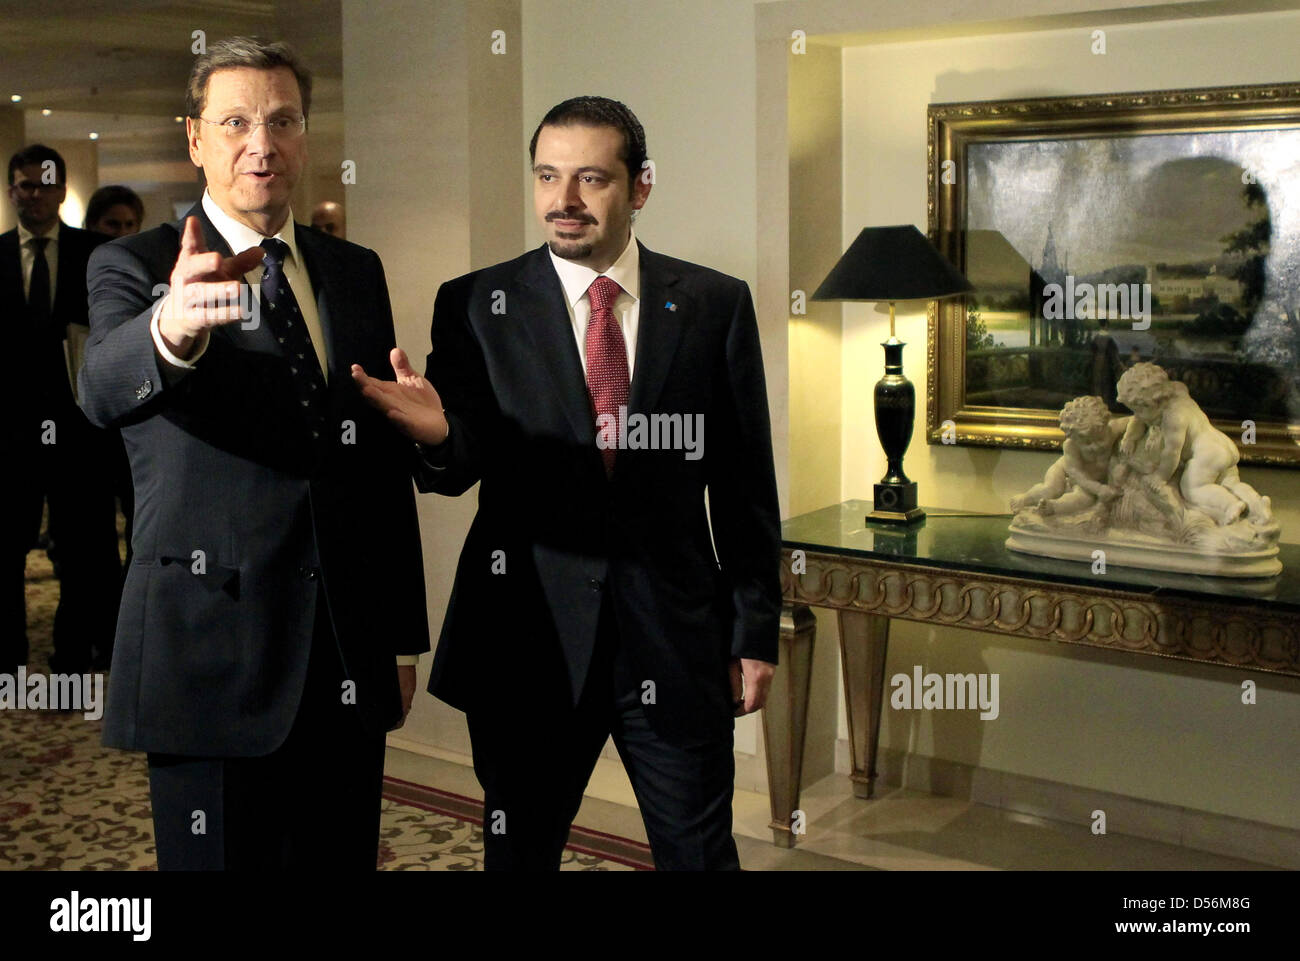 Premier Ministre du Liban, Saad al-Hariri (R) se félicite le ministre des Affaires étrangères allemand Guido Westerwelle pour des entretiens bilatéraux à l'hôtel Adlon de Berlin, Allemagne, 15 mars 2010. Photo : REUTERS/FABRIZIO BENSCH EXTÉRIEURE Banque D'Images